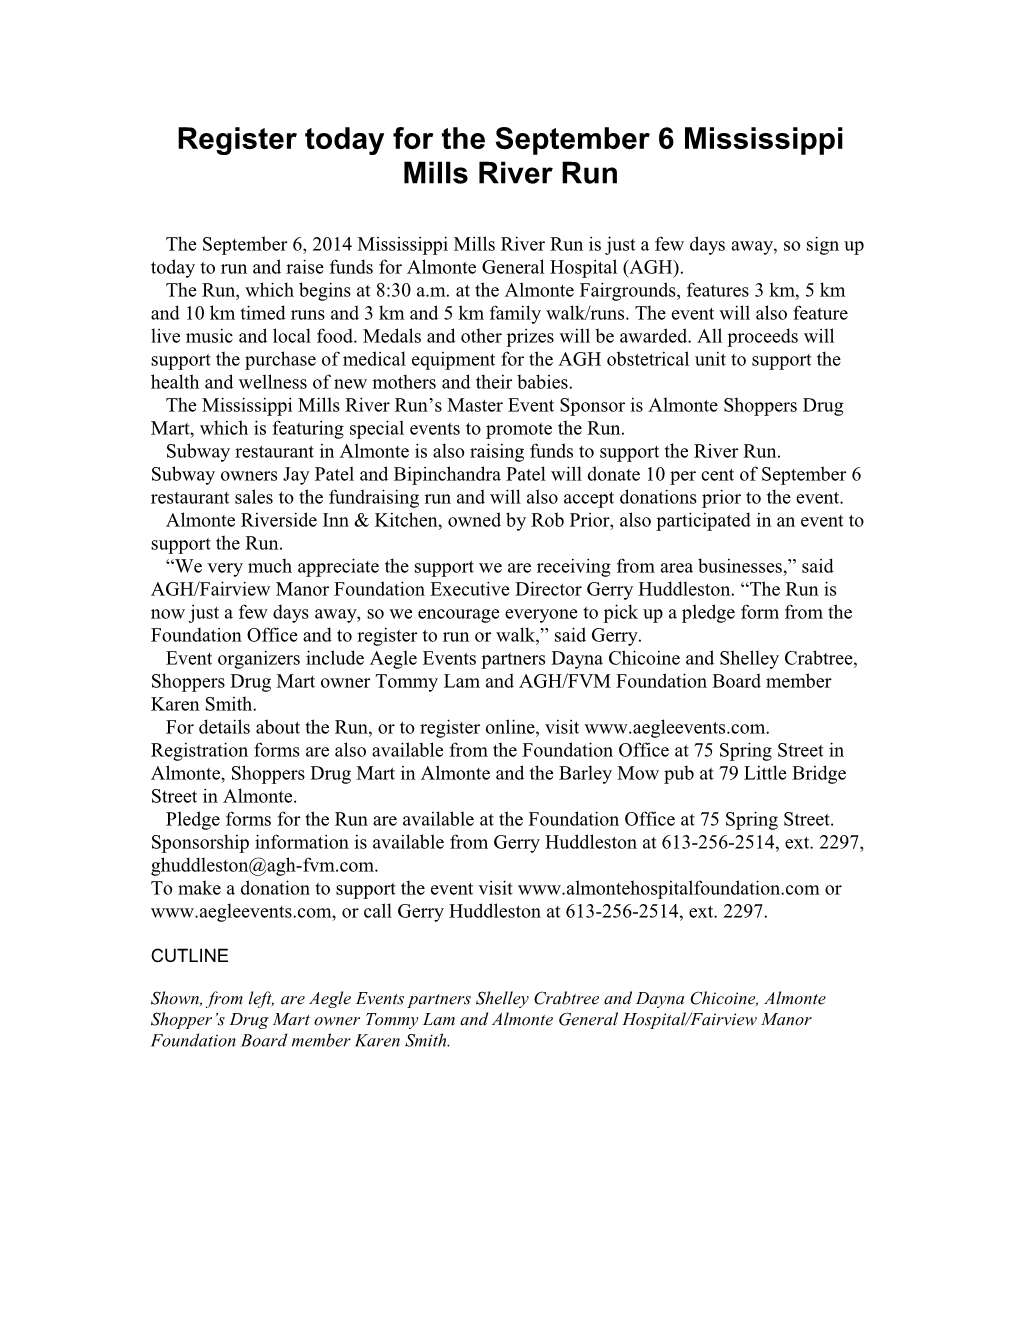 Register Today for the September 6 Mississippi Mills River Run